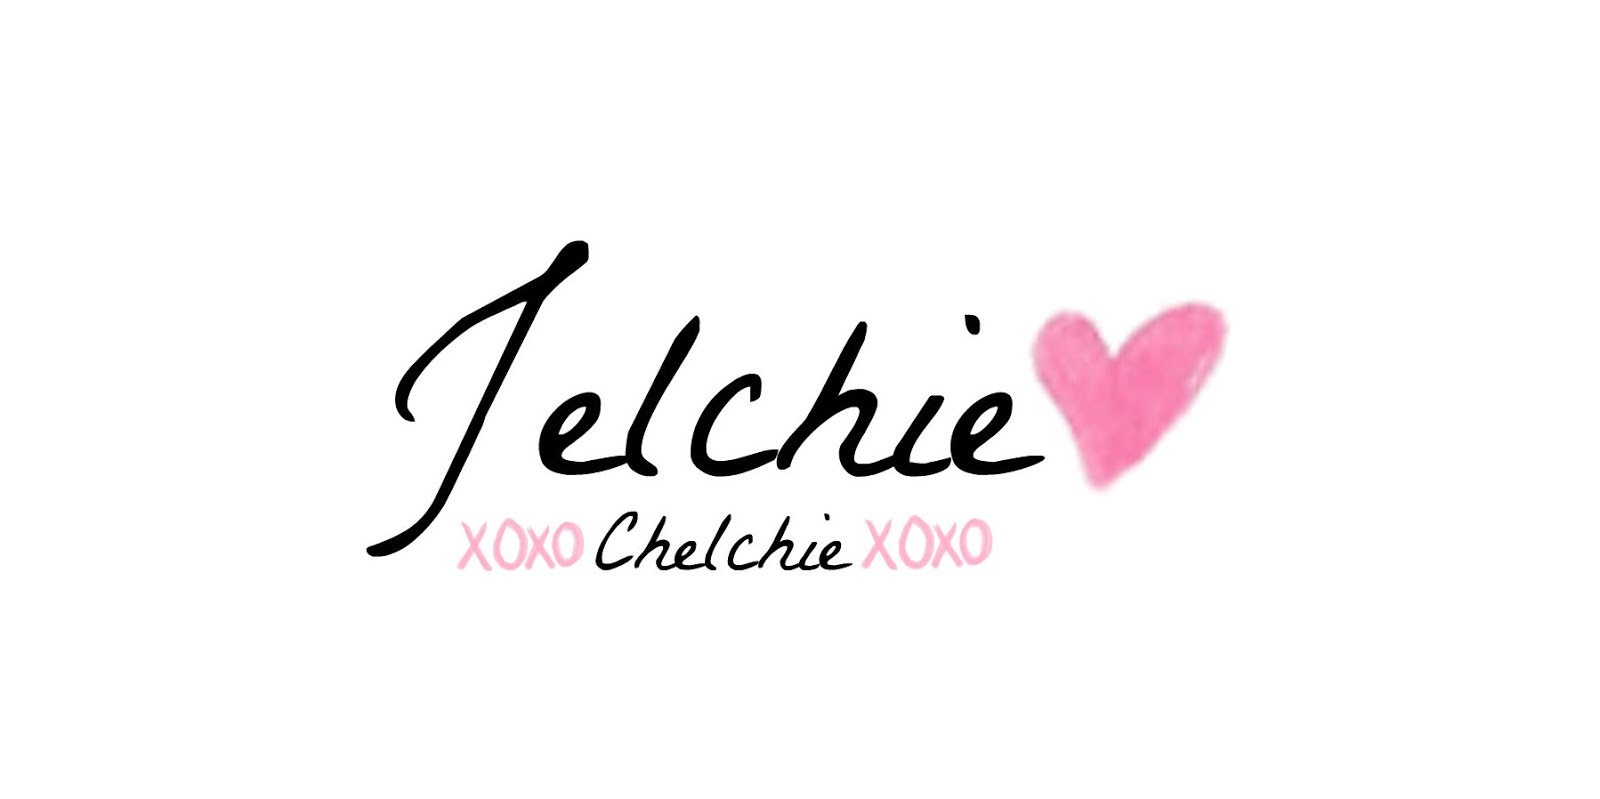 Jelchie-chelchie ♥